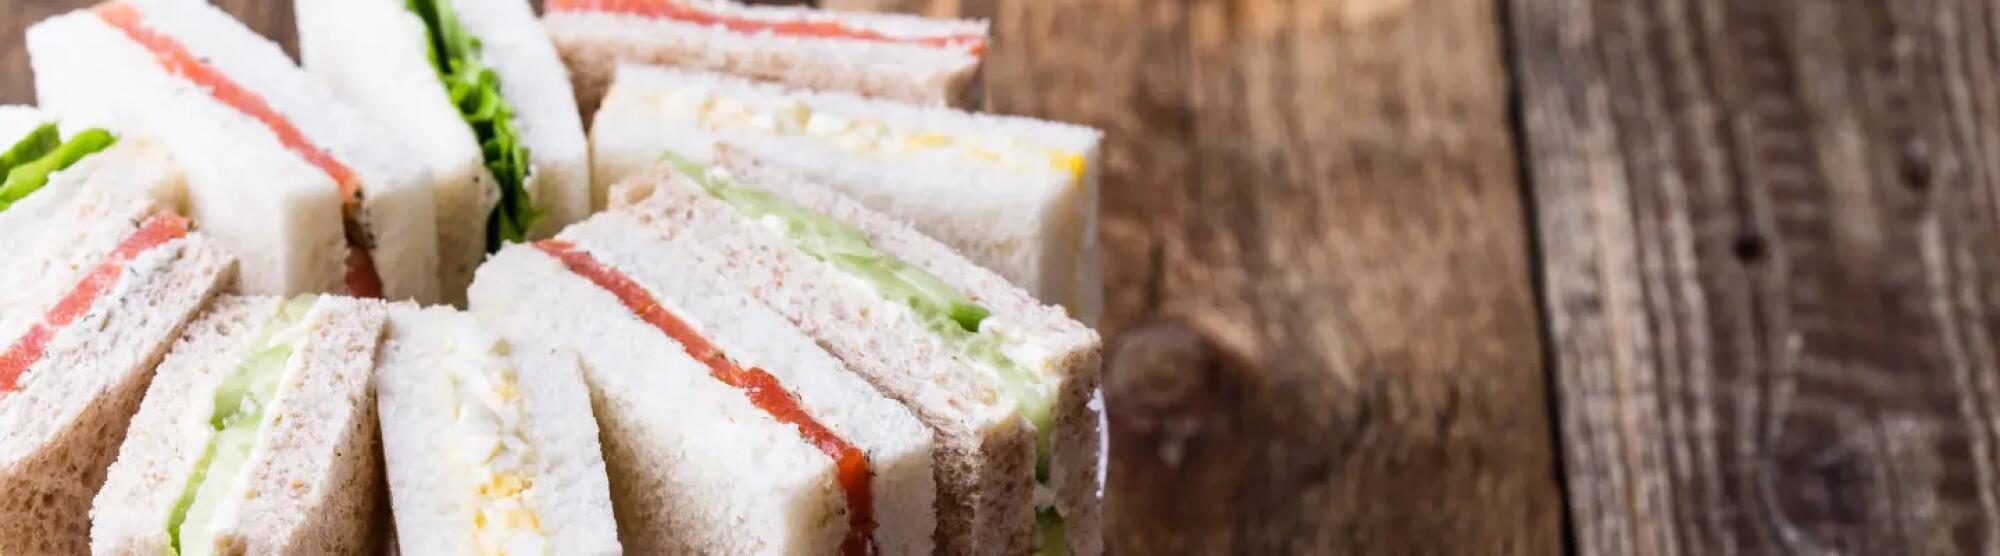 Recette : Sandwich cake au saumon fumé, radis et chèvre frais